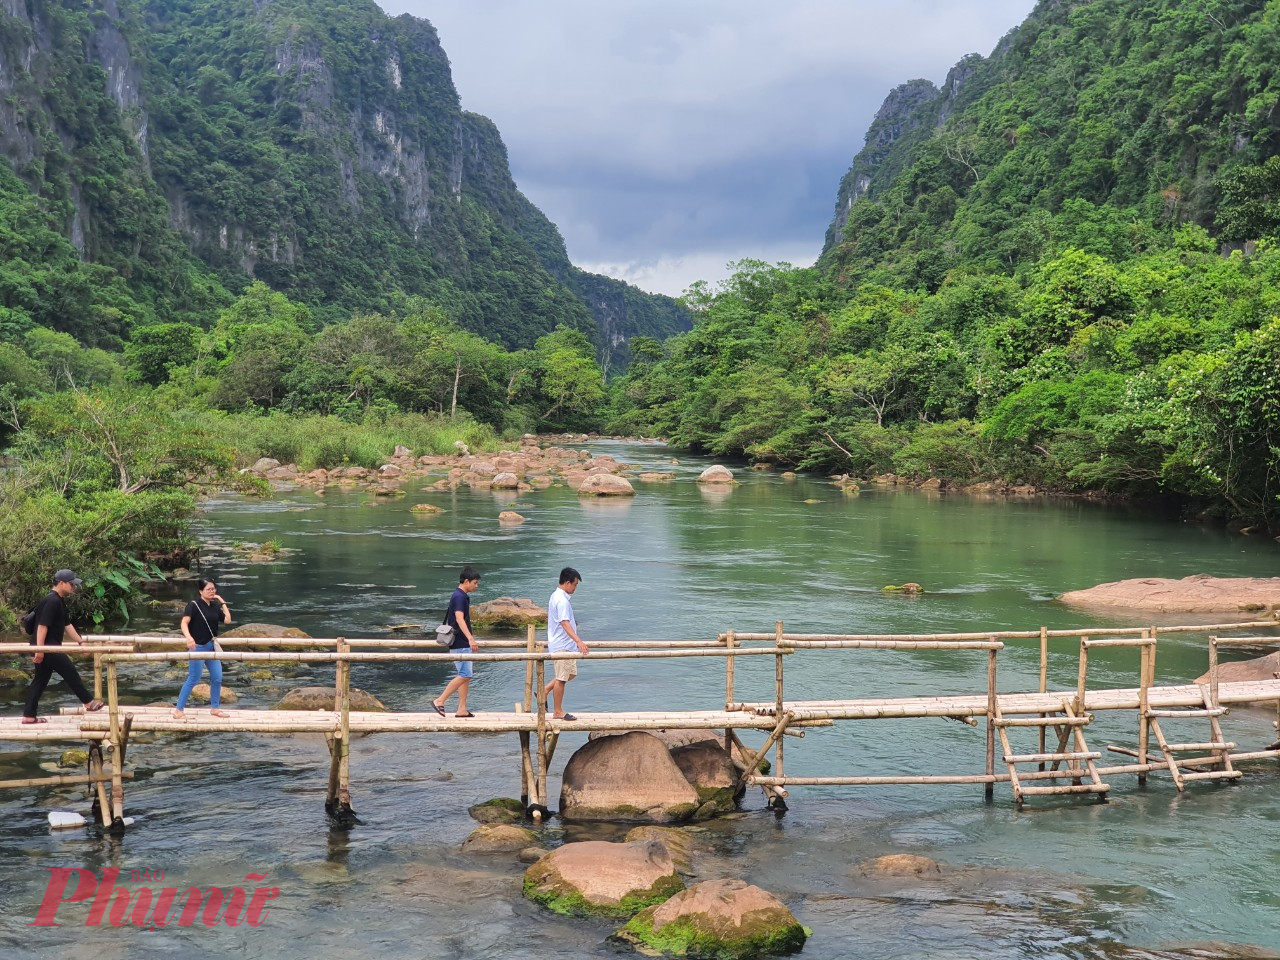 Suối nước Moọc nằm trên nhánh Tây của đường Hồ Chí Minh, cách Phong Nha khoảng 30 km, gần động Thiên Đường; cách thành phố Đồng Hới (Quảng Bình) khoảng 70km về hướng Tây Bắc.